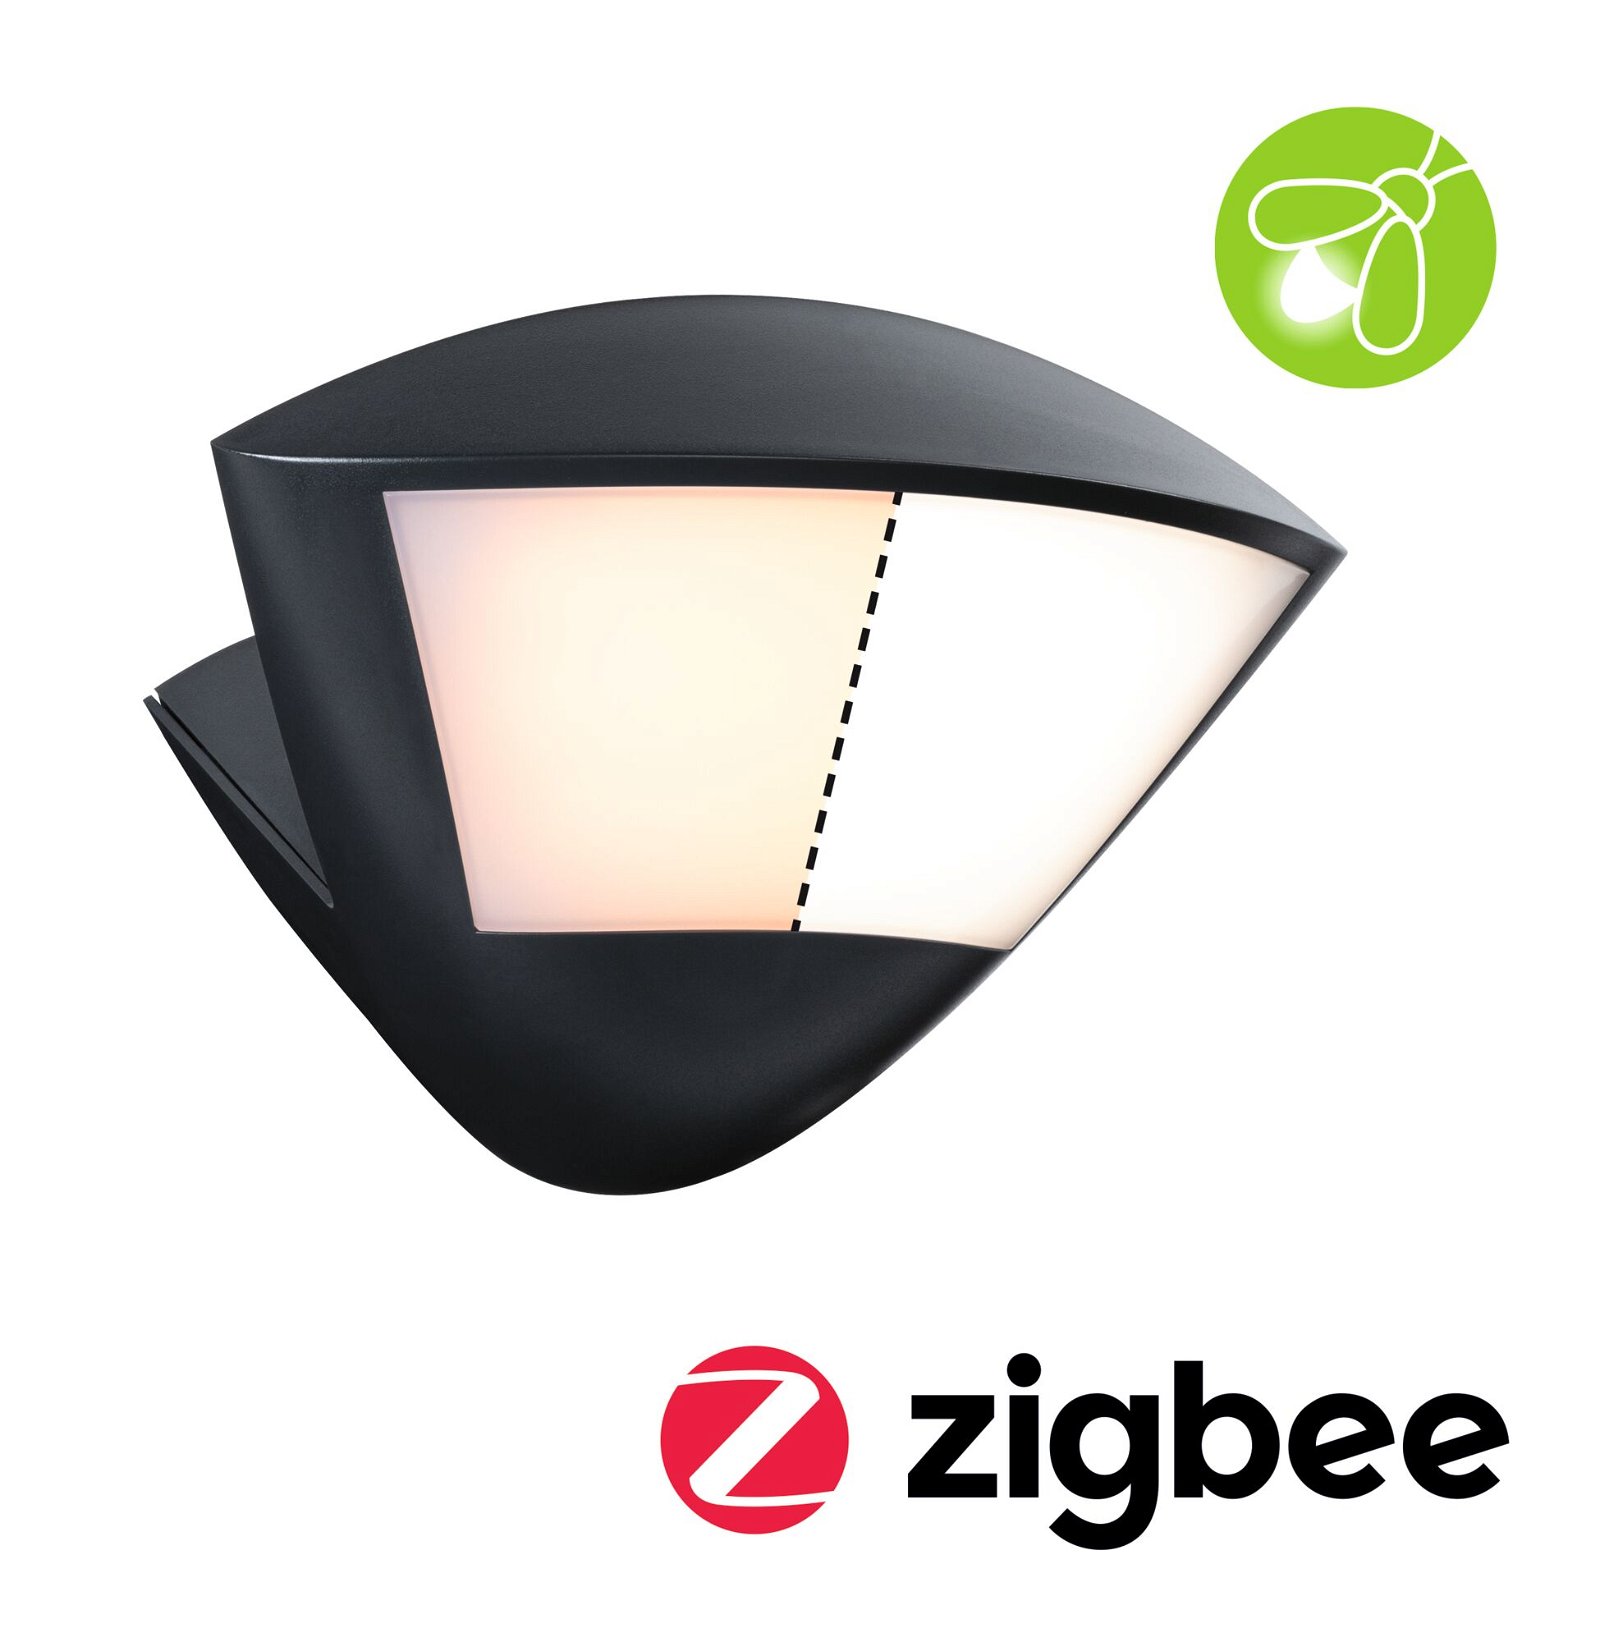 Applique d'extérieur LED Smart Home Zigbee 3.0 Skyla Détecteur de mouvement favorable aux insectes IP44 226x164mm Tunable Warm 10W 840lm 230V Anthracite Aluminium